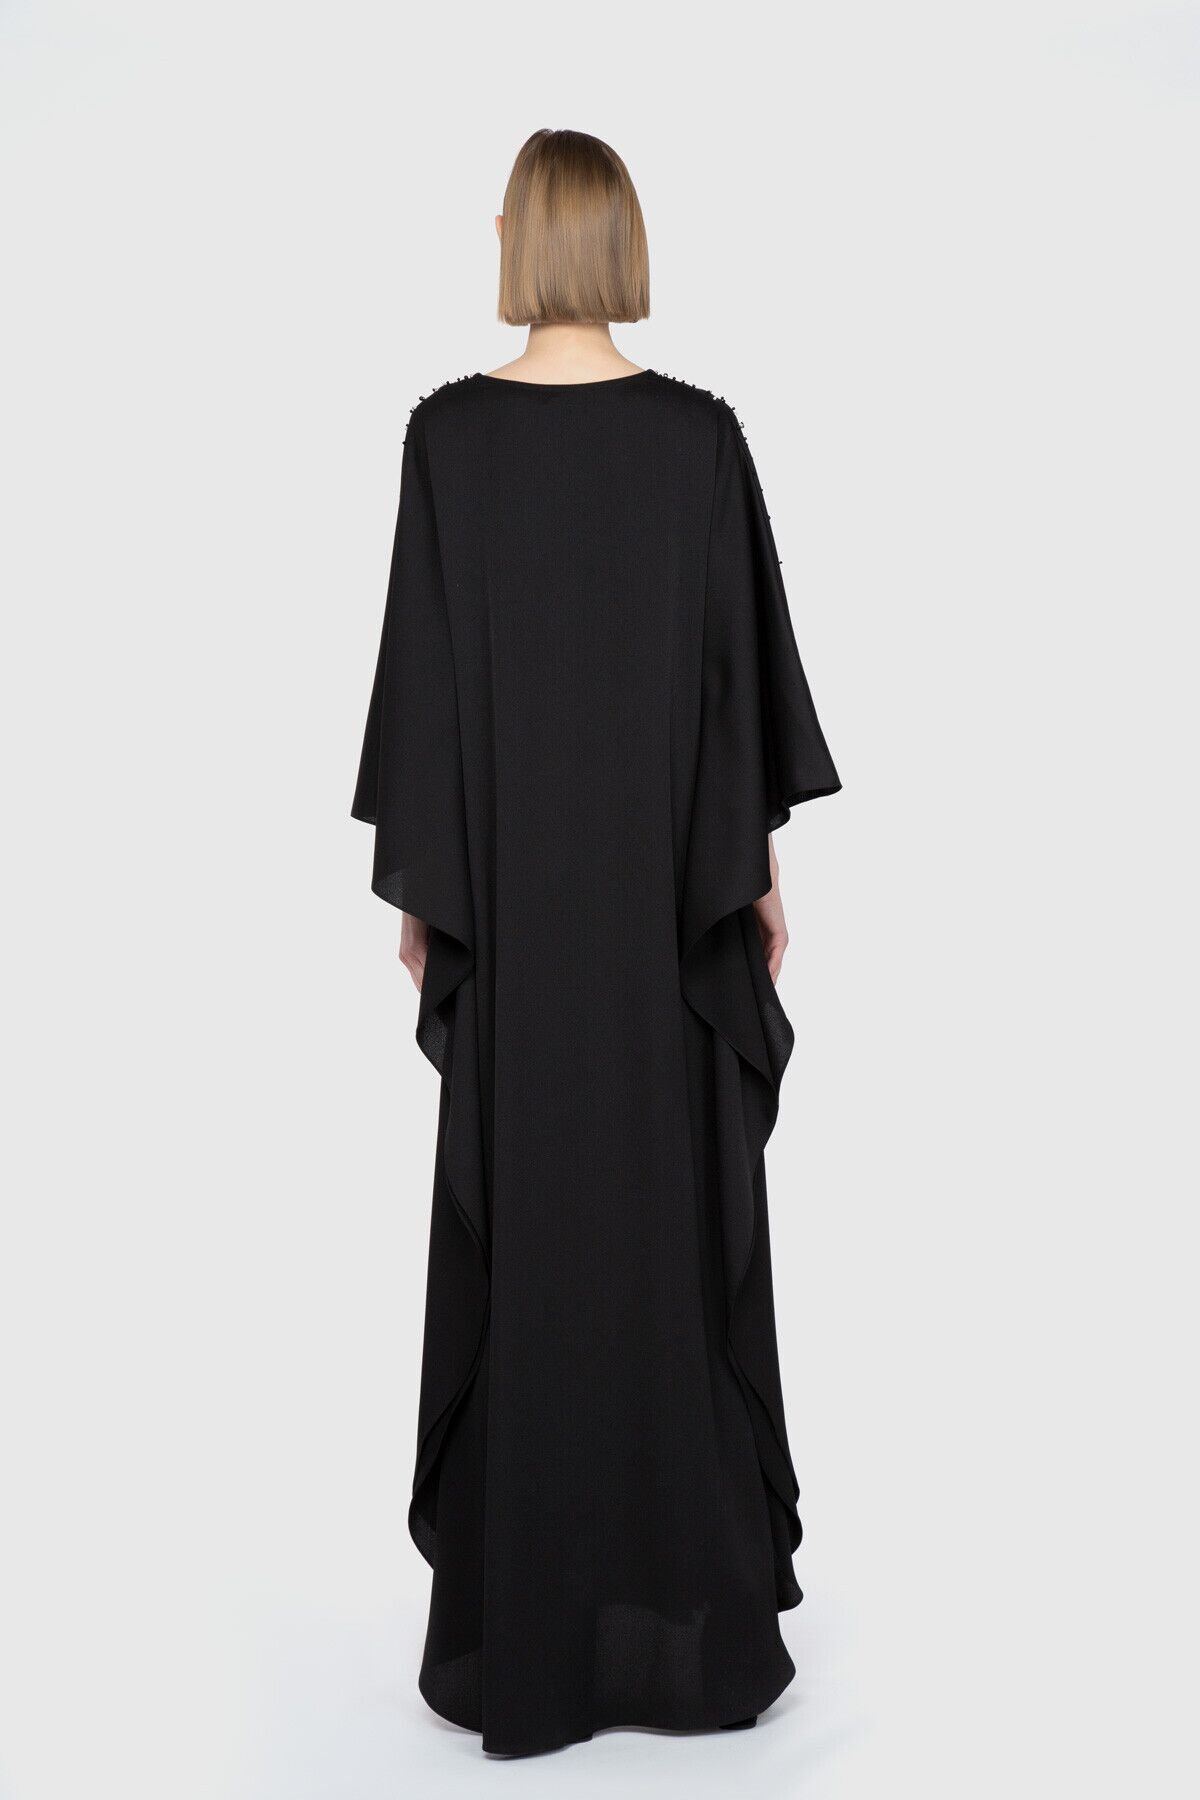 Nihan Peker V Yaka Geniş Kesim Uzun Tasarım Elbise